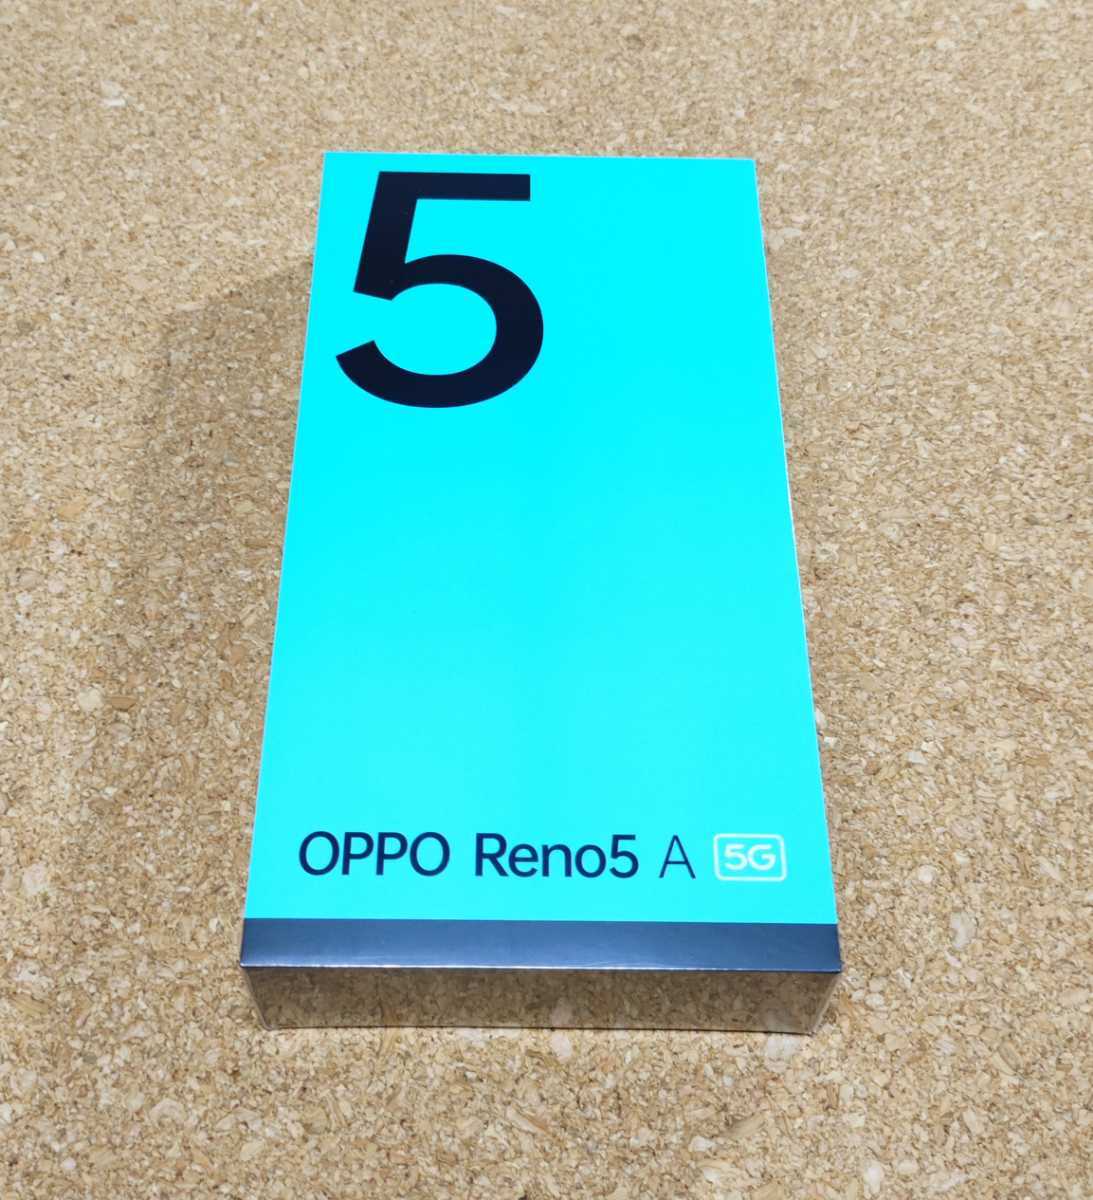 スマートフォン/携帯電話 スマートフォン本体 新品(開封済) OPPO Reno5 A （eSIM対応版） シルバーブラック | www 